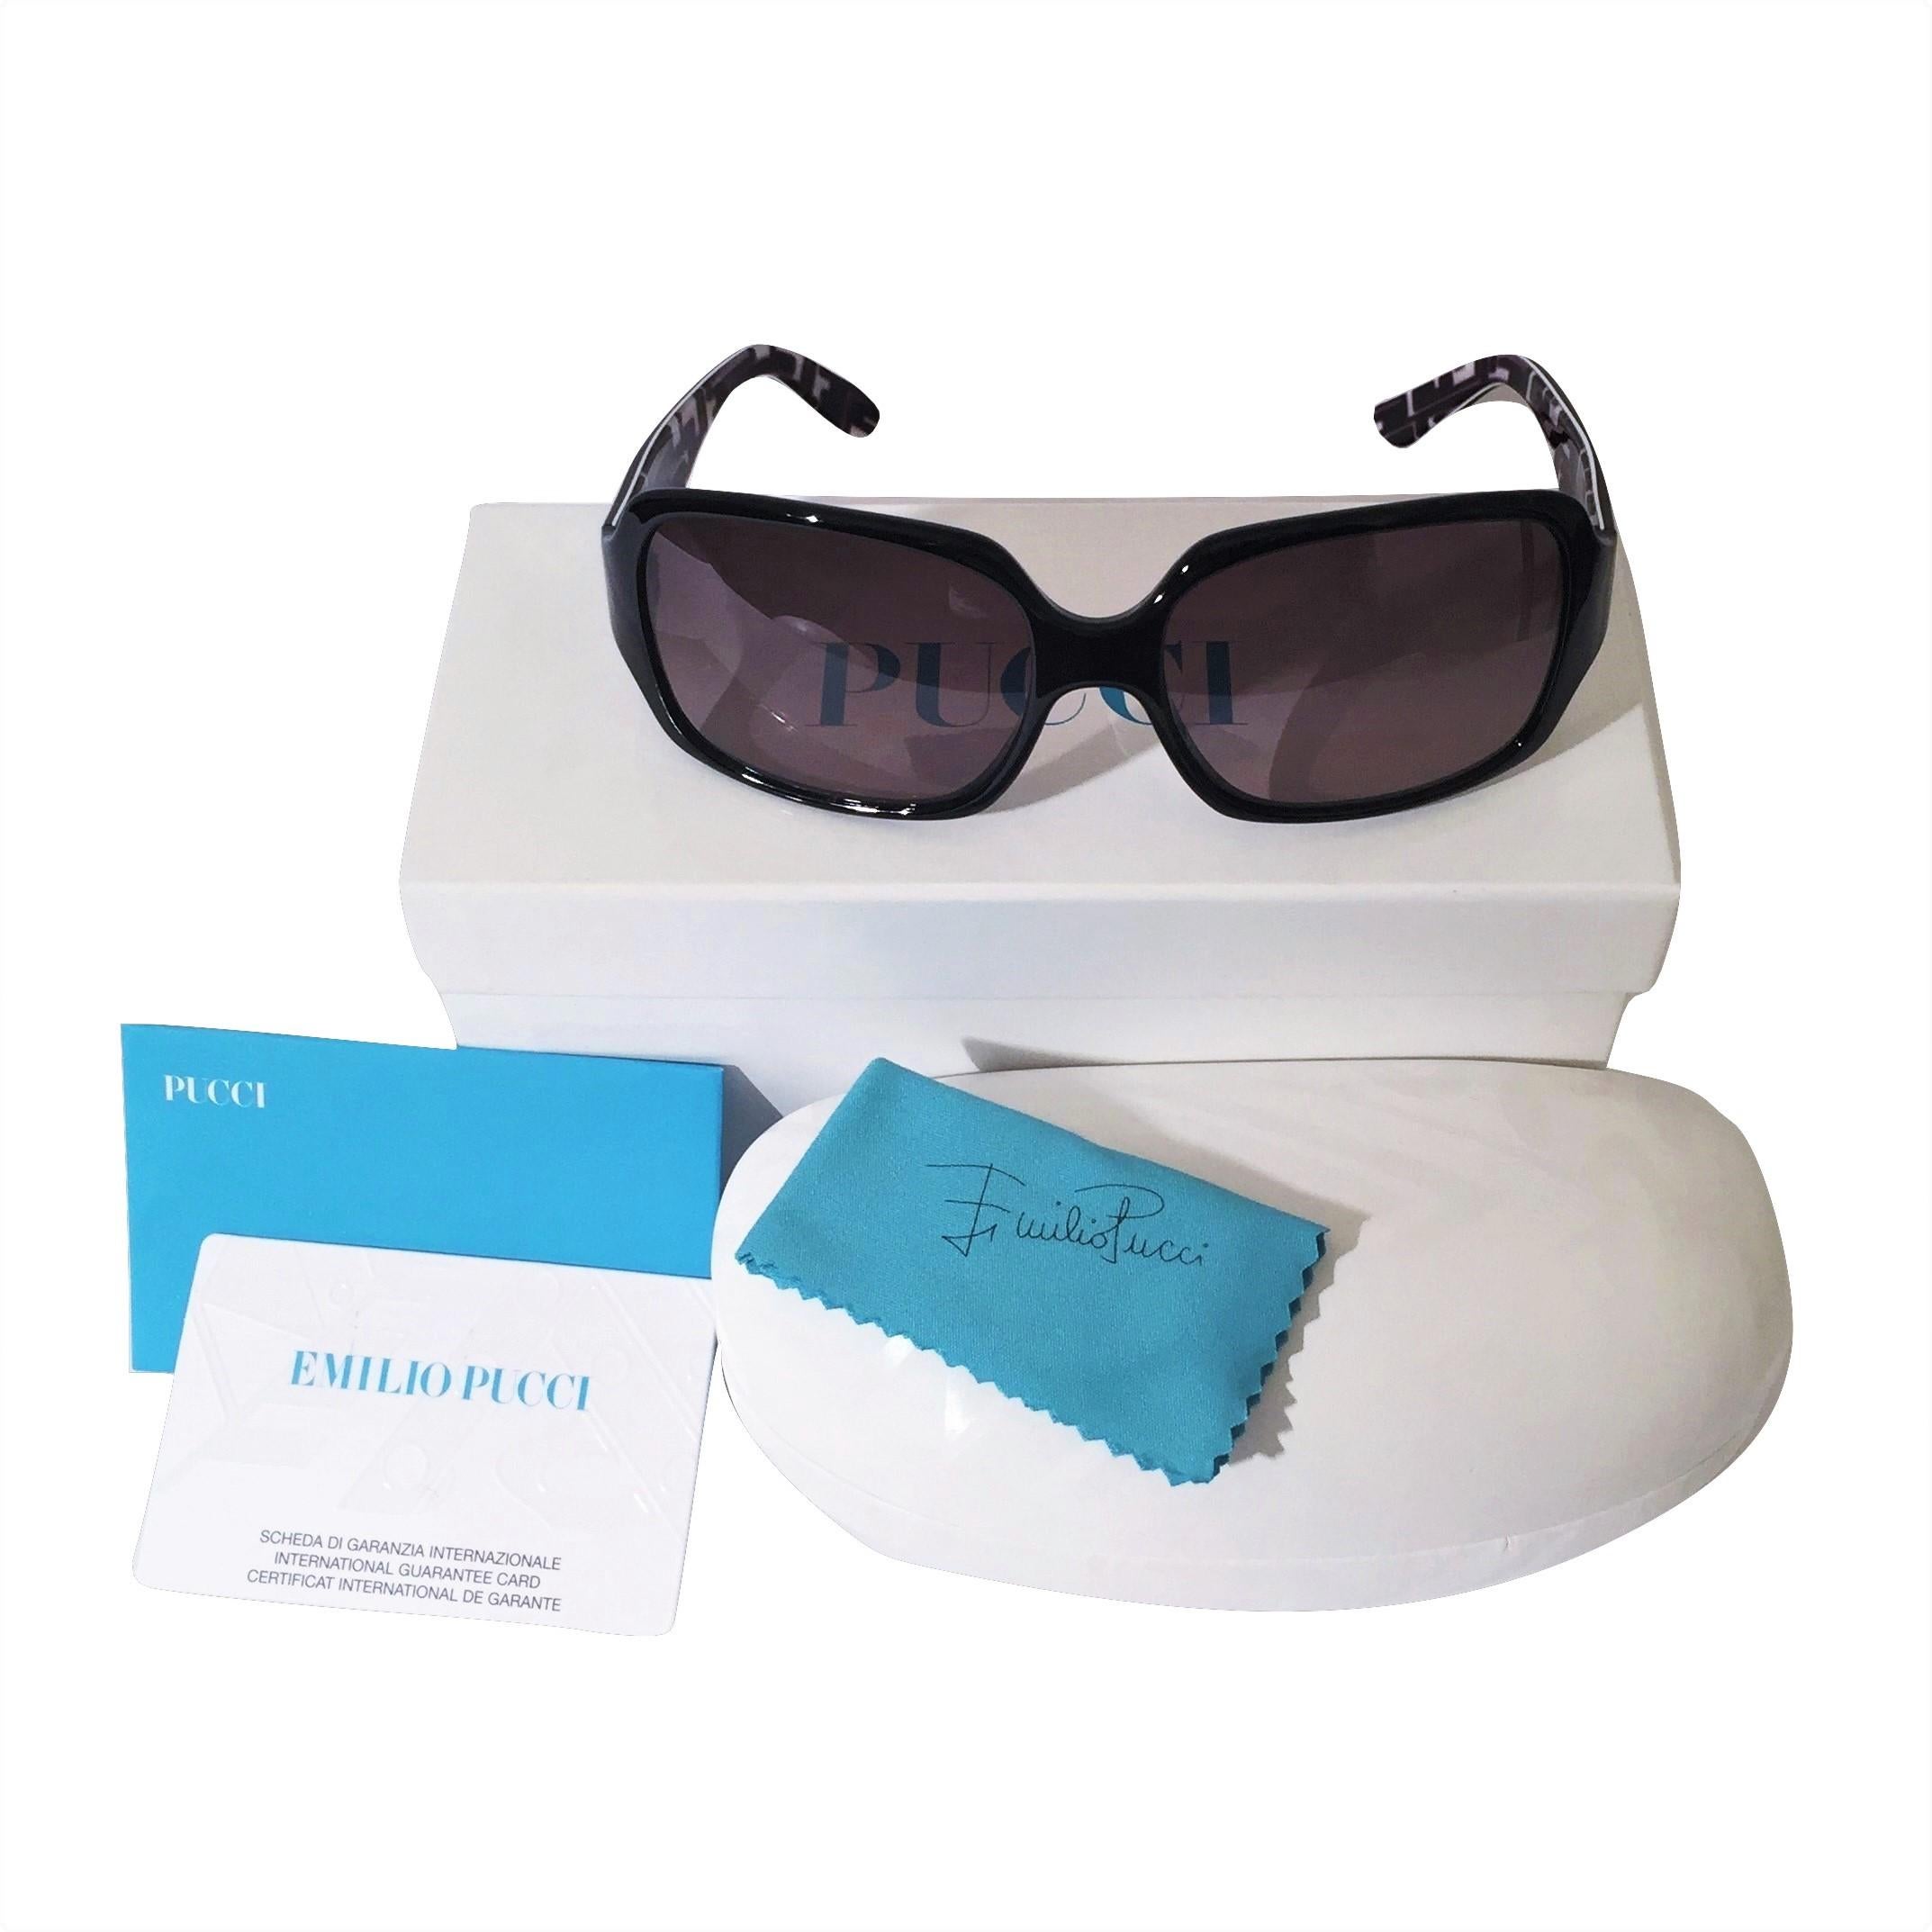 New Emilio Pucci Black Logo Sunglasses With Case & Box 5